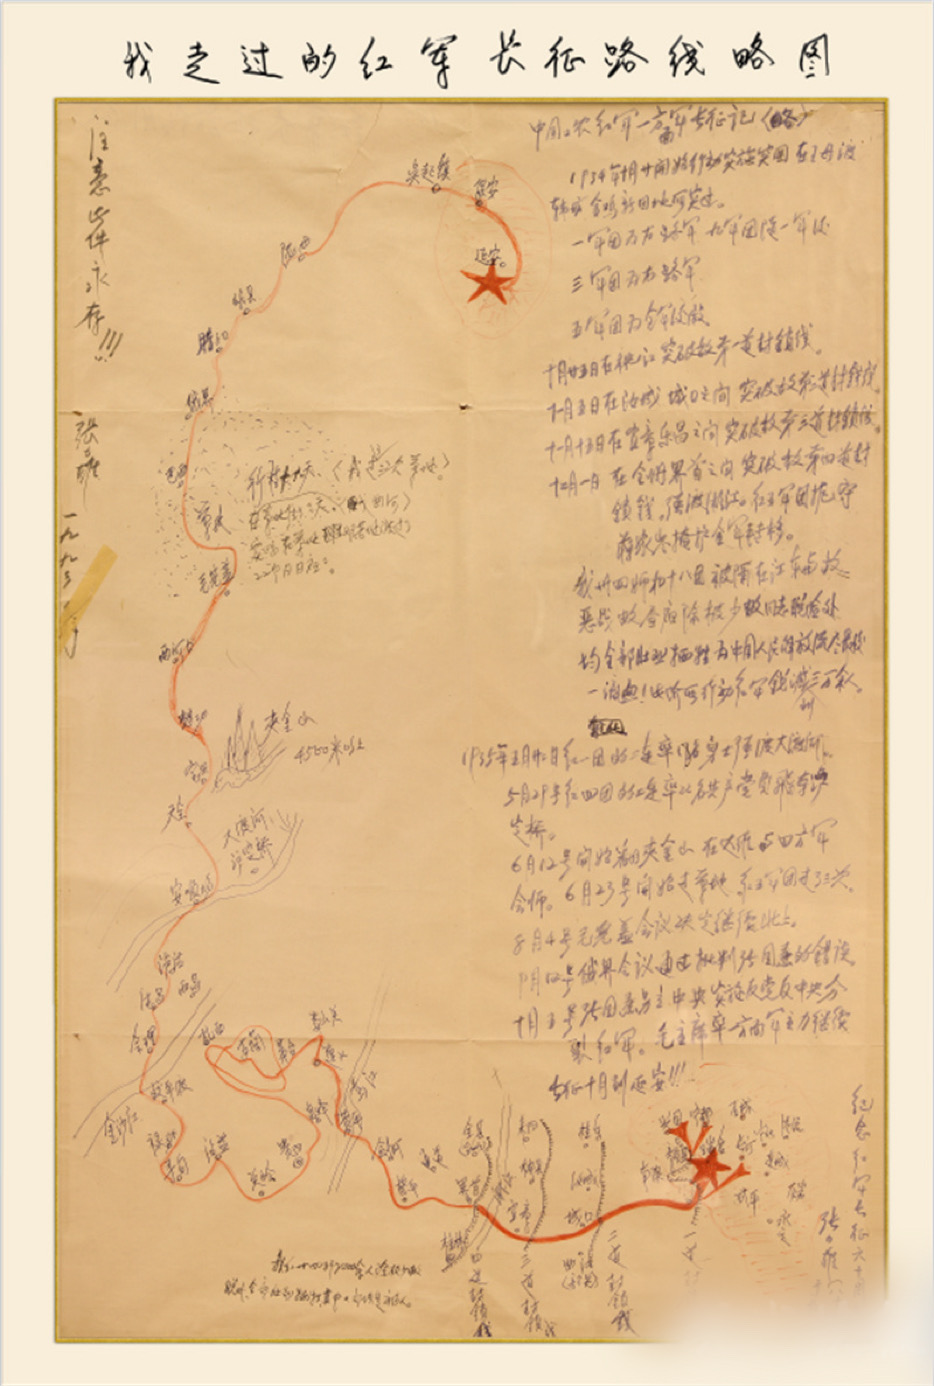 1998年，85岁的张力雄亲手绘制了《我走过的红军长征路线略图》，密密麻麻地写下他长征时行军的路程和战斗过的地方。